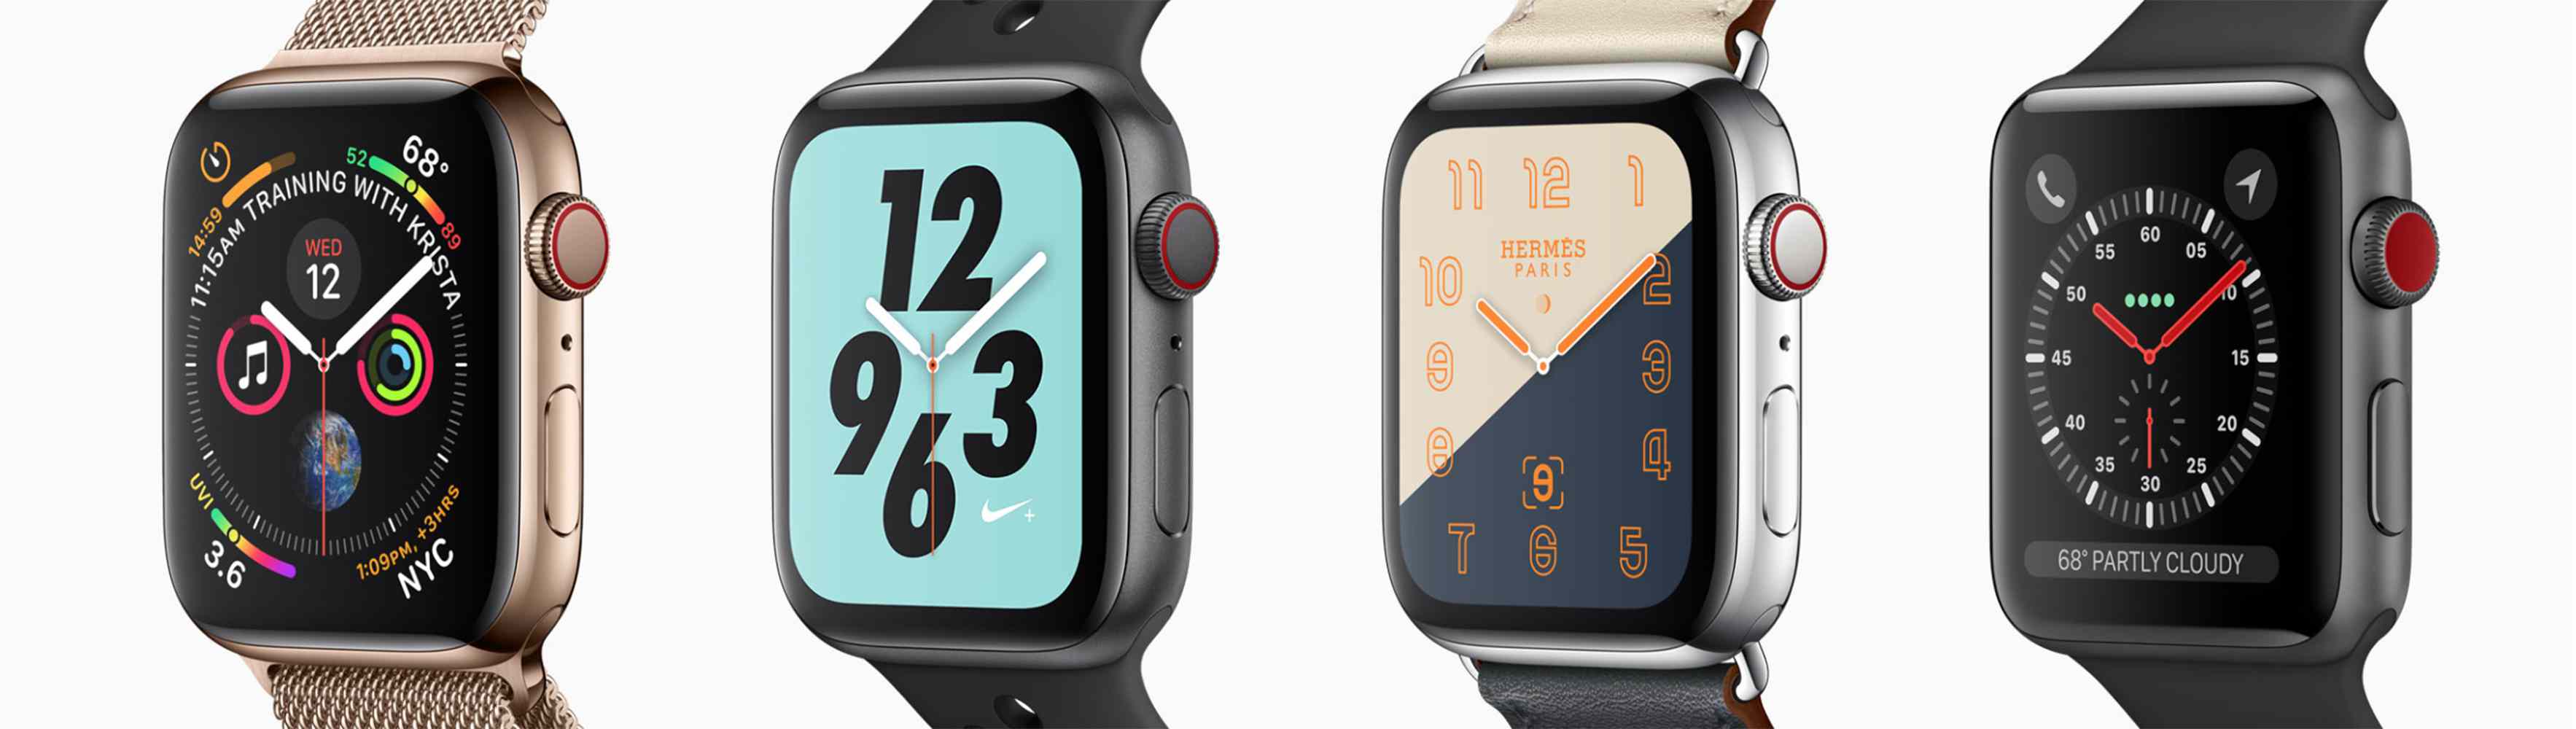 Čtyři modely Apple Watch s různými vzory ciferníku